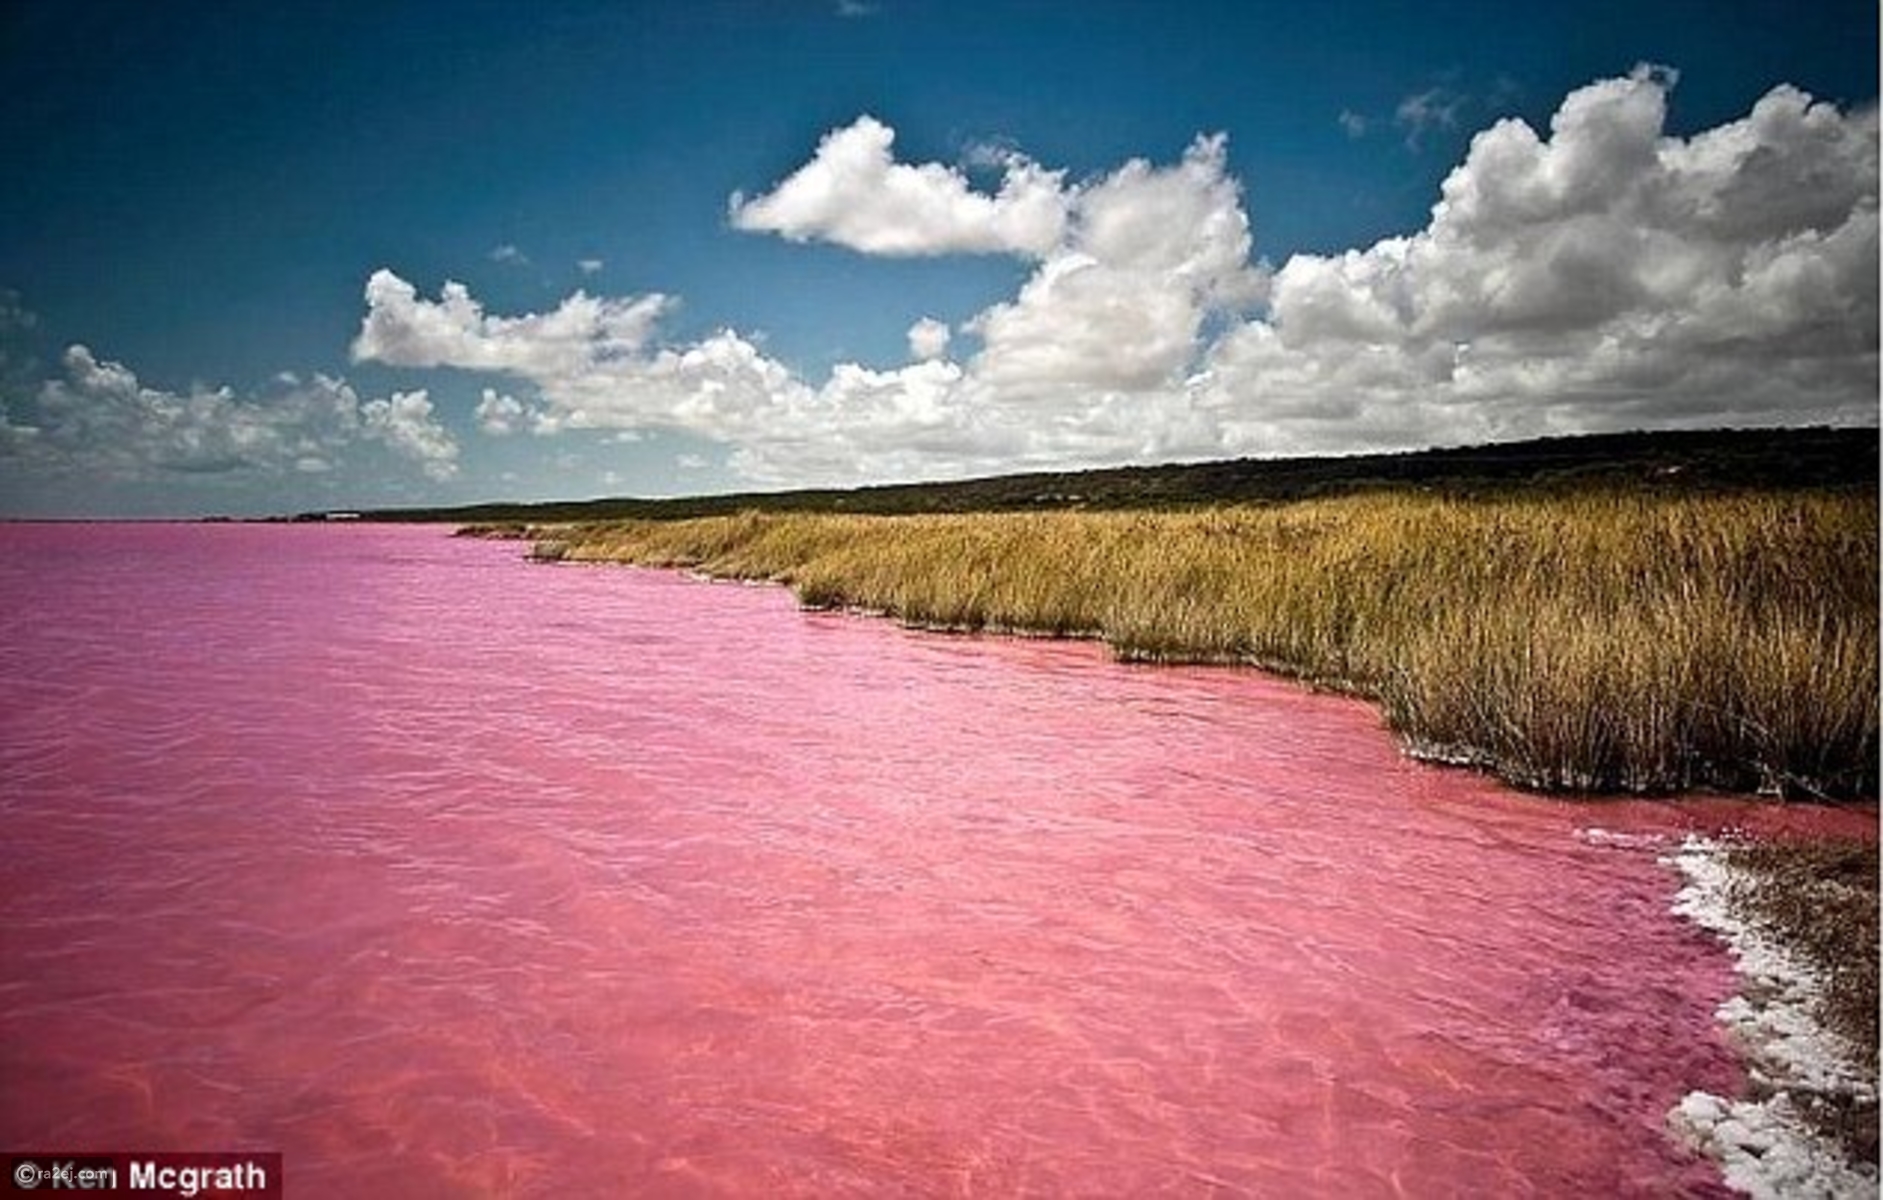 بحيرة هيلير أو البحيرة الوردية في غرب أستراليا 9695ab24a6ac117c51b0634d3b9076ceed5963ed-041016125311.jpg?preset=v3